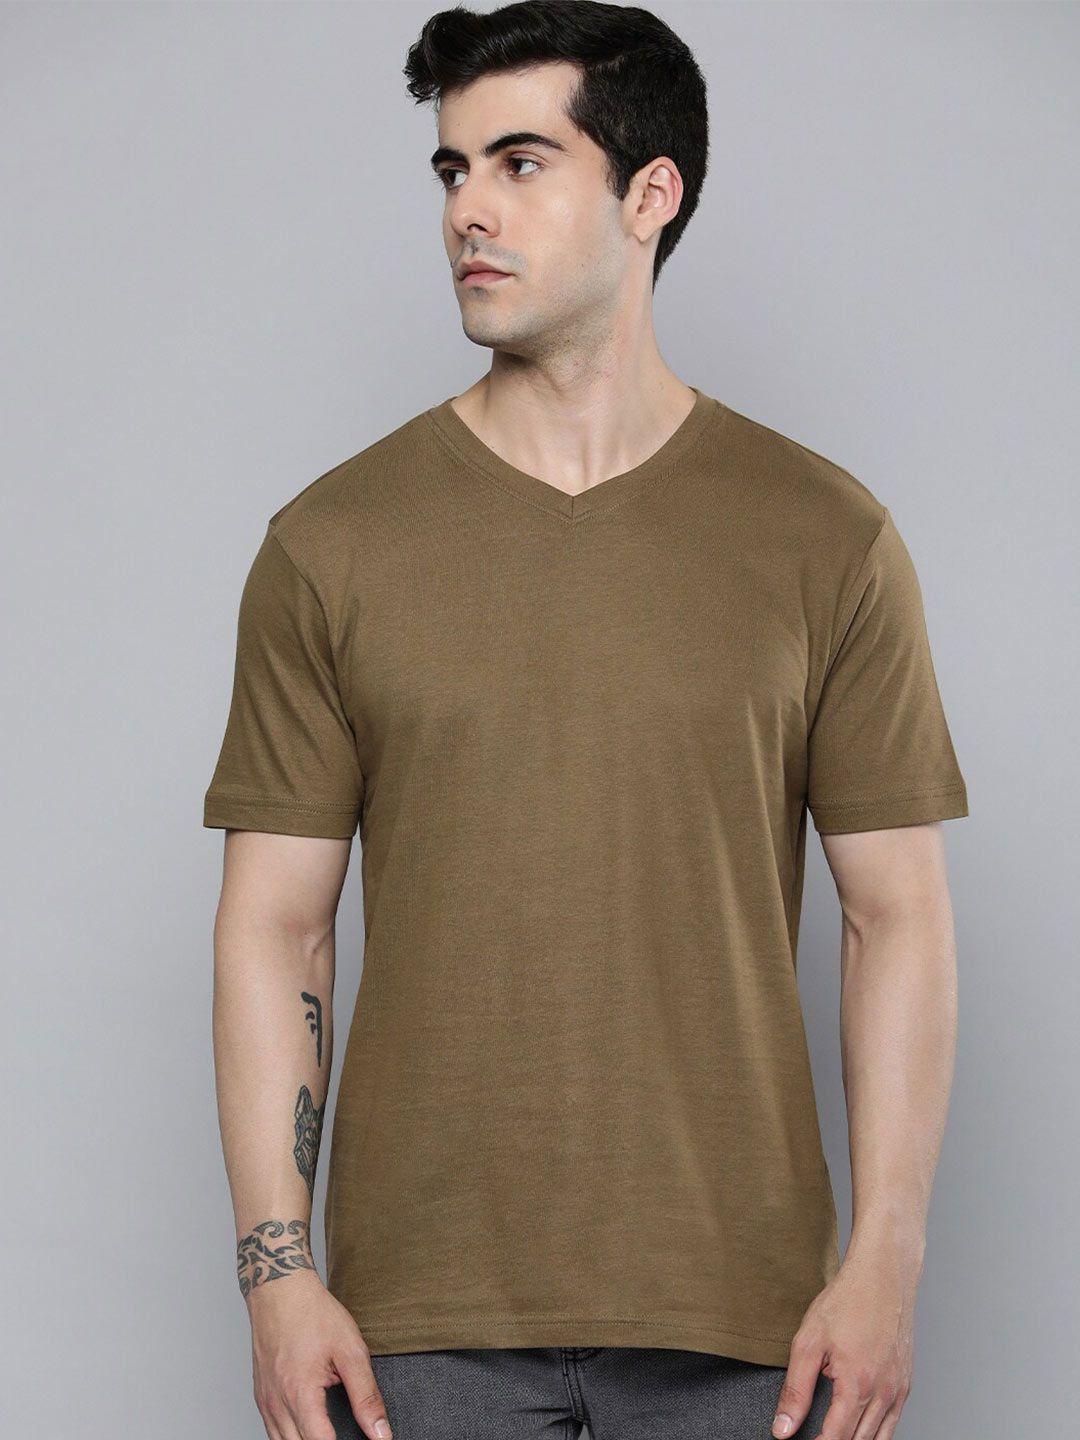 mast & harbour brown v-neck cotton t-shirt